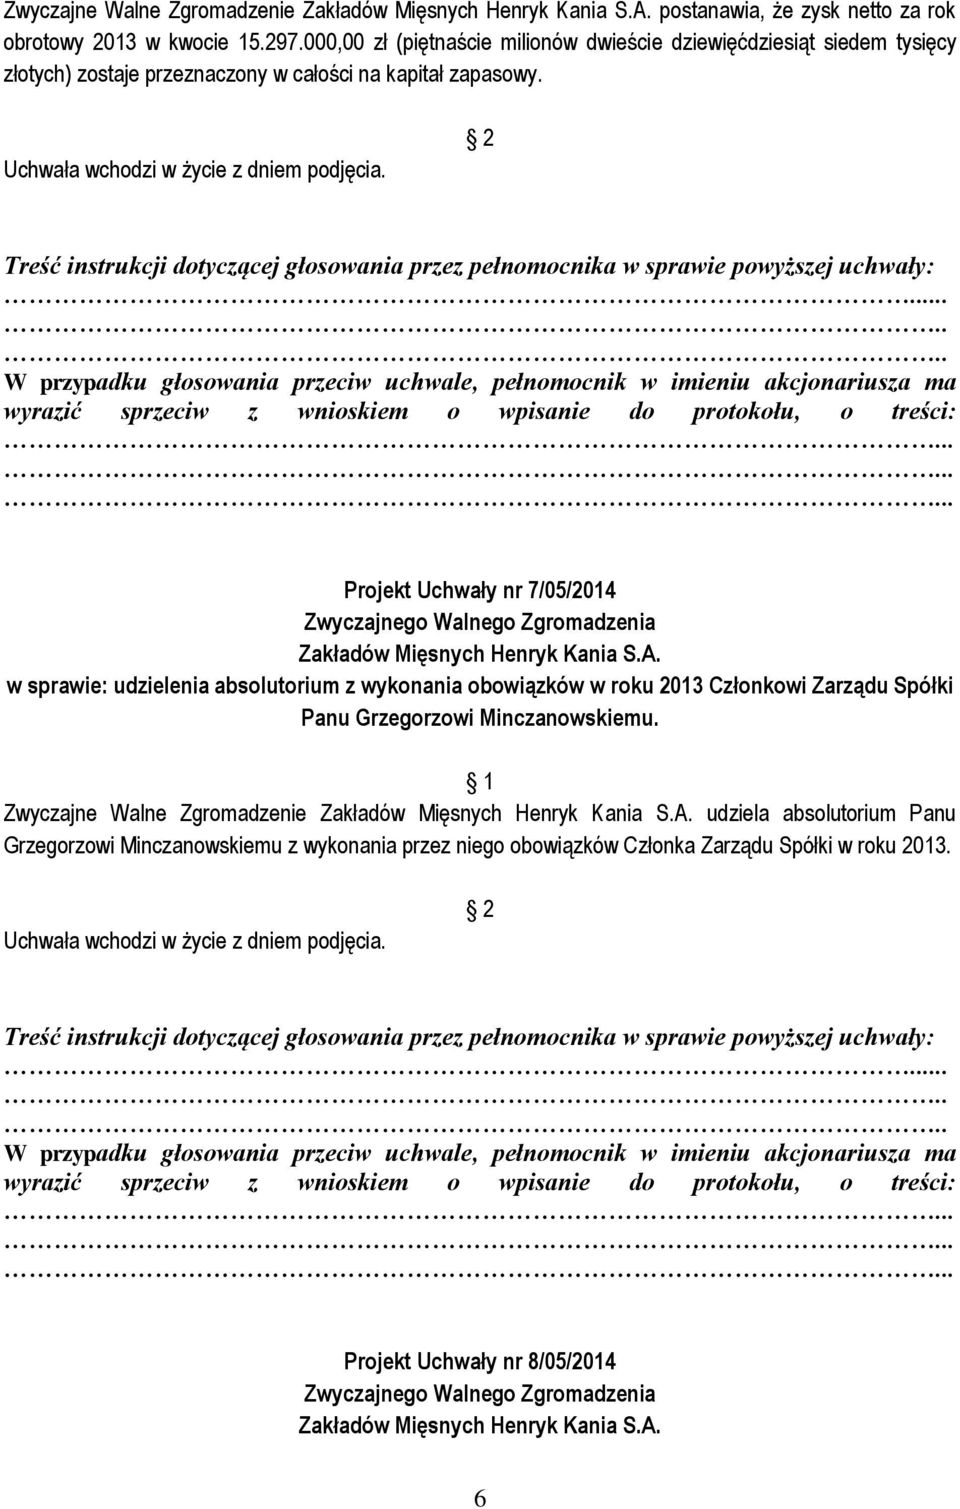 Projekt Uchwały nr 7/05/2014 w sprawie: udzielenia absolutorium z wykonania obowiązków w roku 2013 Członkowi Zarządu Spółki Panu Grzegorzowi